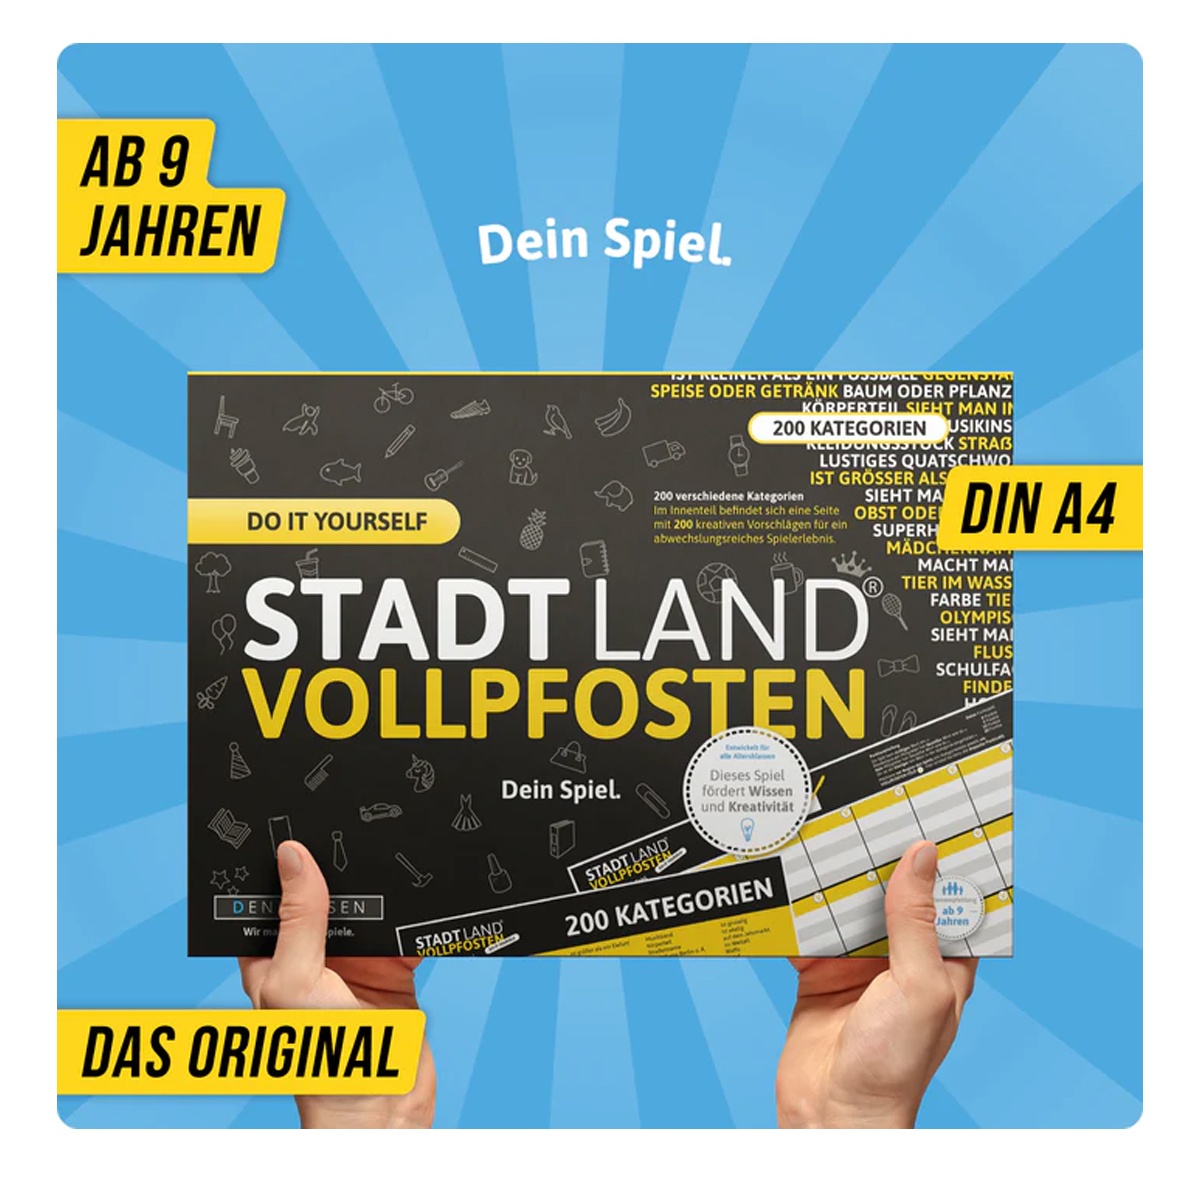 Stadt Land Vollpfosten - Do it Yourself - Dein Spiel